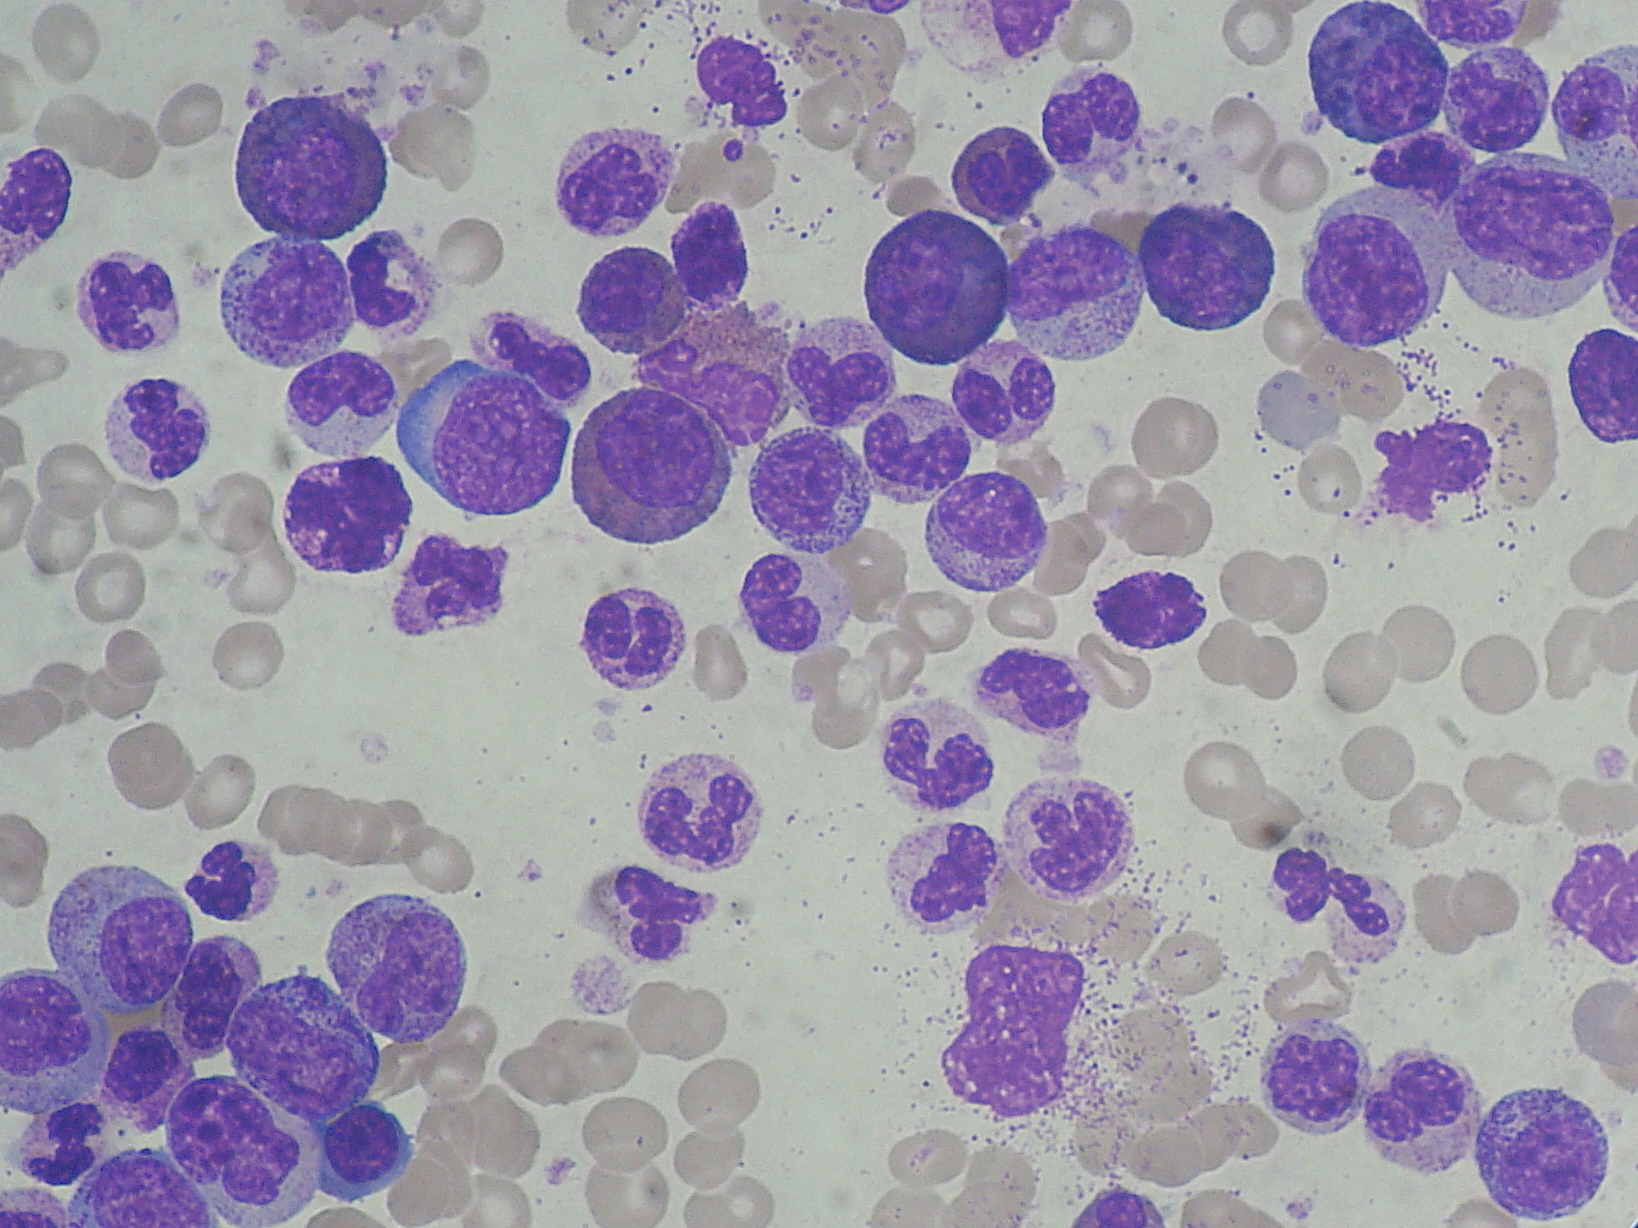 Chronic Myeloid Leukemia (CML) Smear